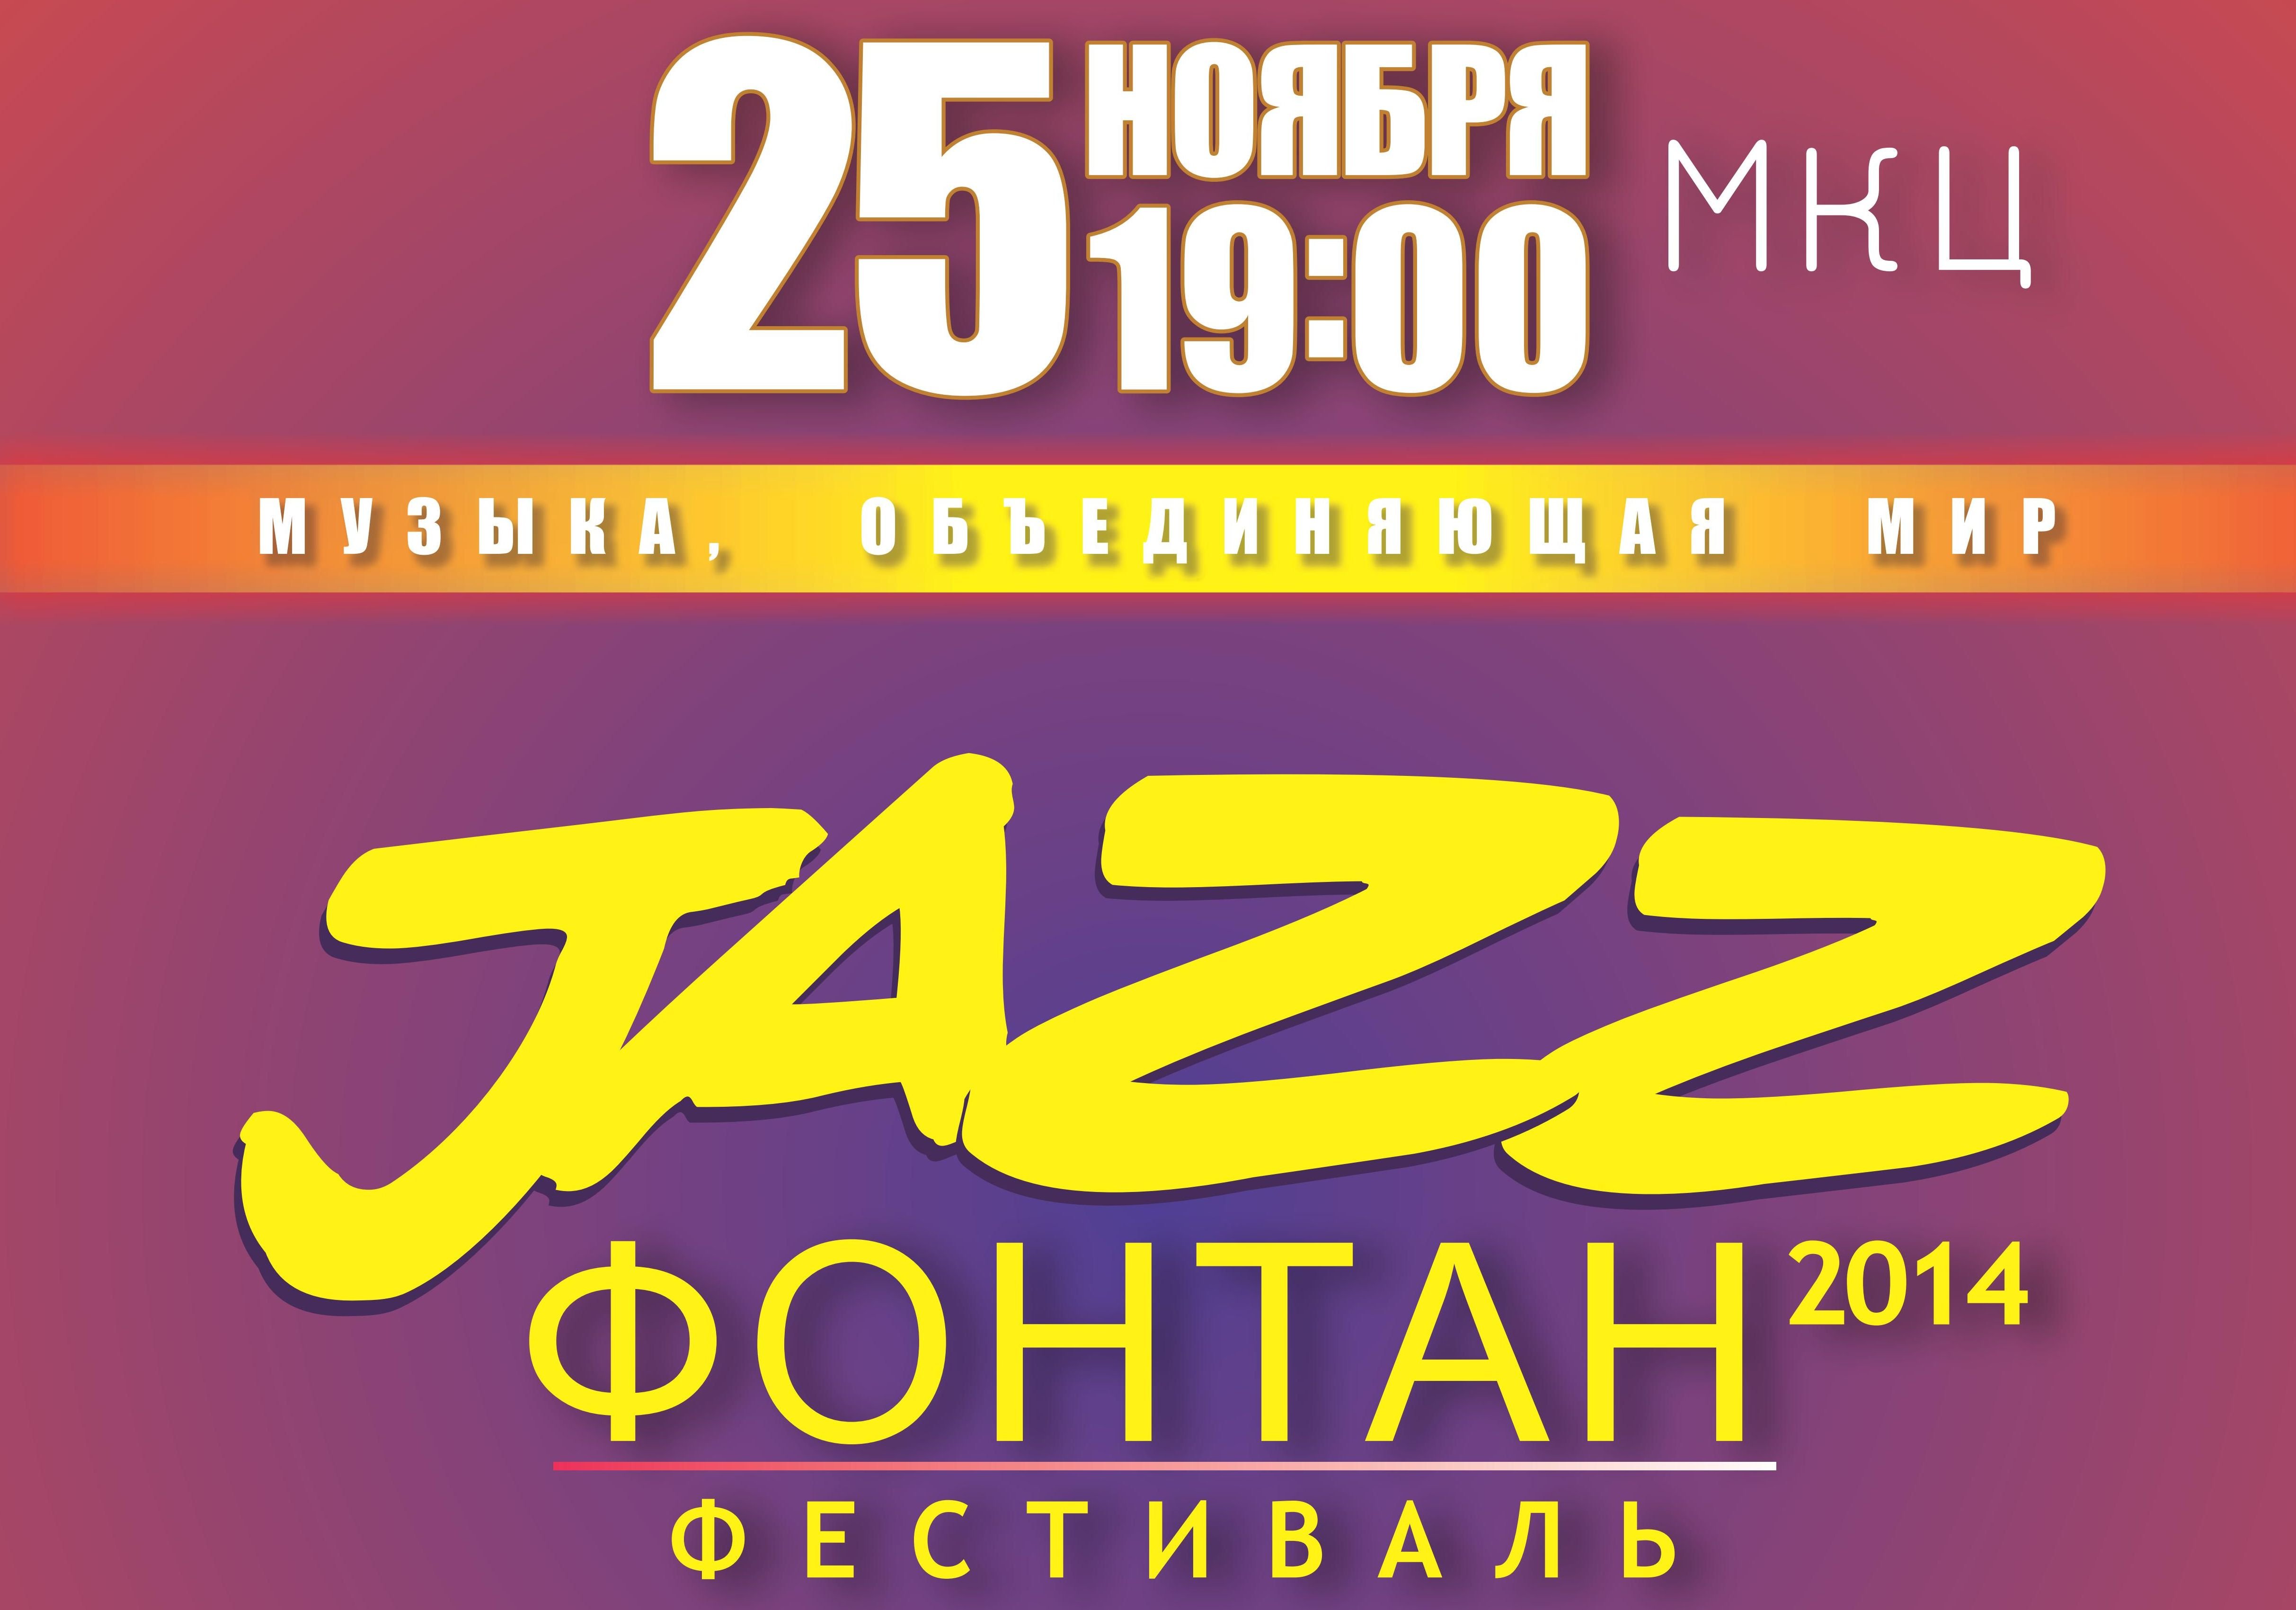 В МКЦ пройдет фестиваль «Jazz Фонтан 2014»